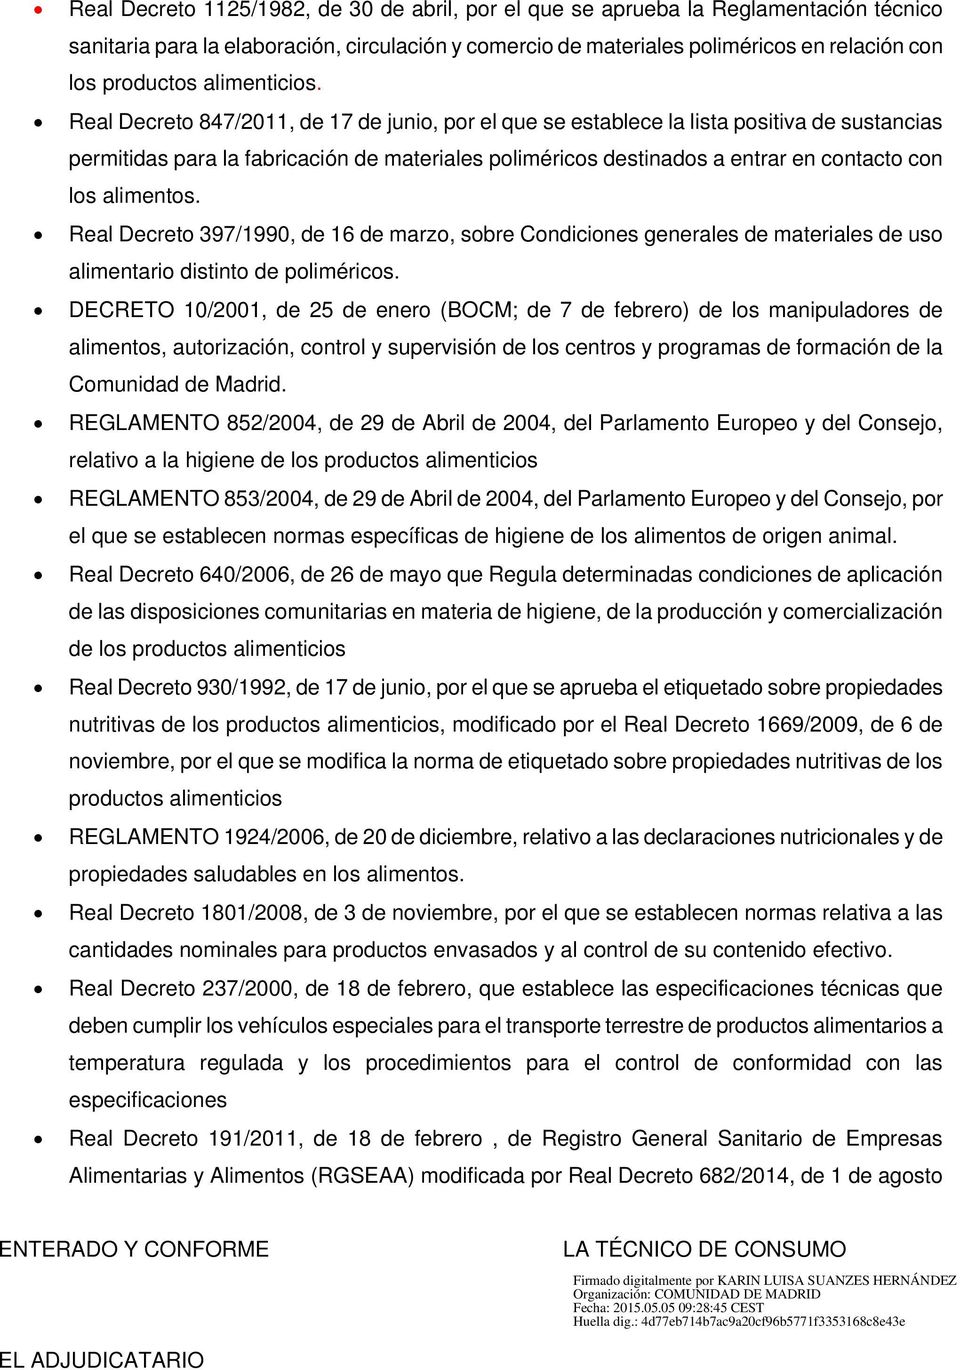 Real Decreto 847/2011, de 17 de junio, por el que se establece la lista positiva de sustancias permitidas para la fabricación de materiales poliméricos destinados a entrar en contacto con los